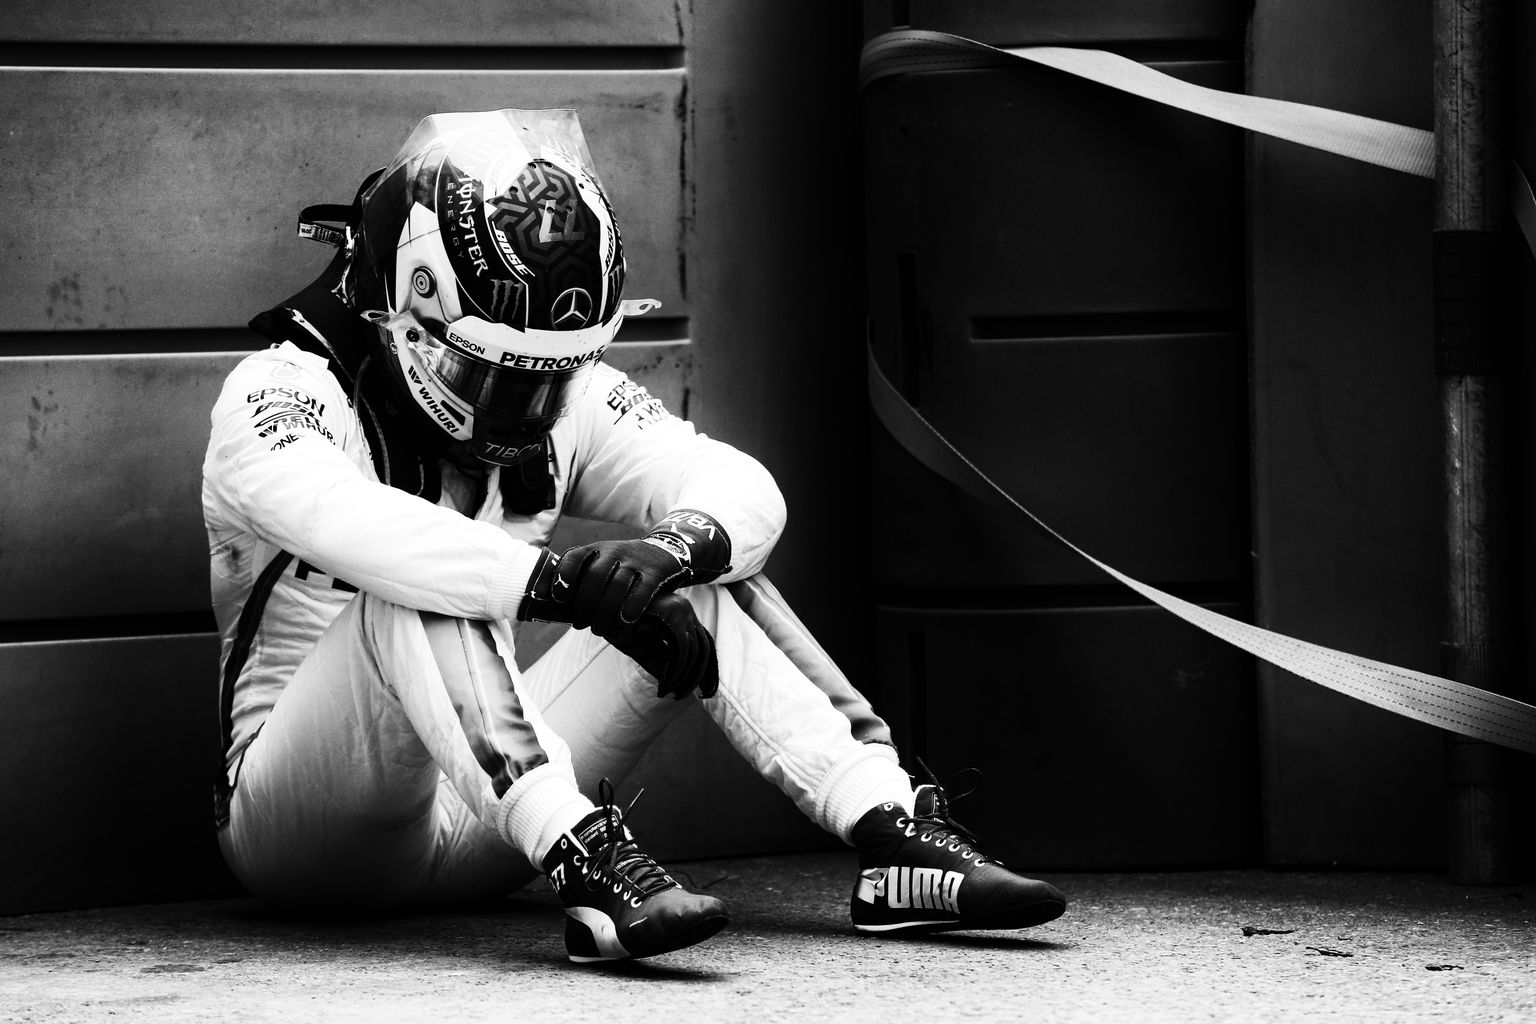 Löödud soomlane Valtteri Bottas (Mercedes) pidi võistluse liidrikohalt kolm ringi enne lõppu katkestama, kui tema rehv purunes pärast rajale sattunud prahist üle sõitmist. Foto: XPB Images/PA Images/Scanpix